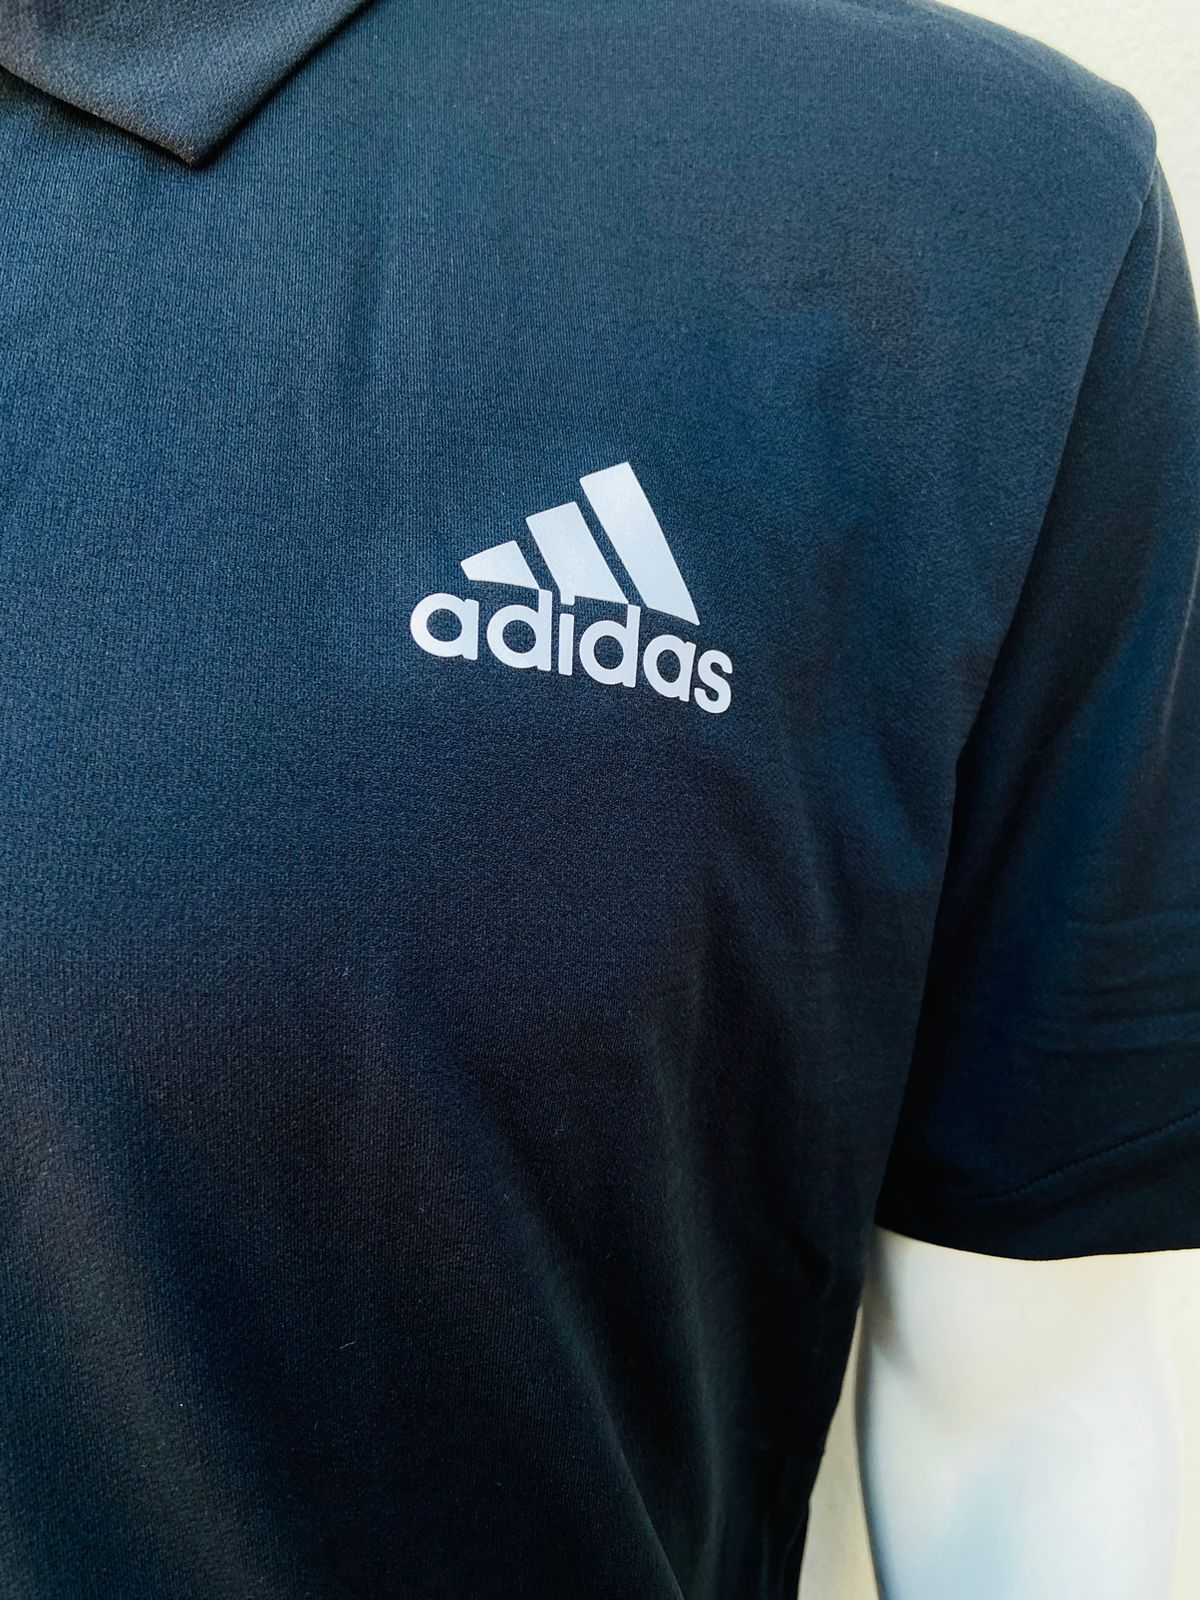 Polocher Adidas original en color negro con pequeño logo tipo de la marca y letras ADIDAS